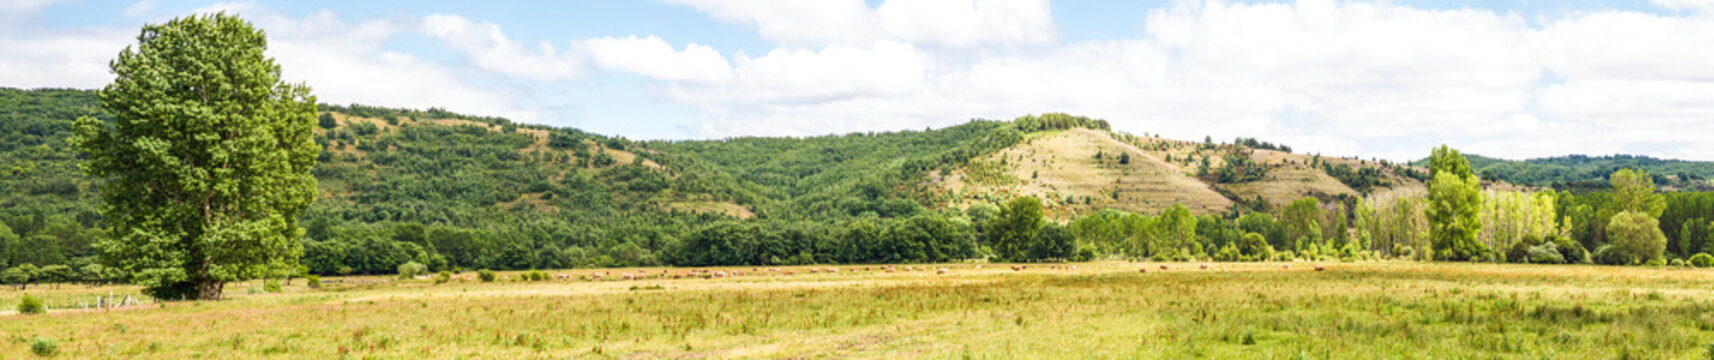  Panorama de Paisaje de Pradera y Colinas con manada de vacas pastando